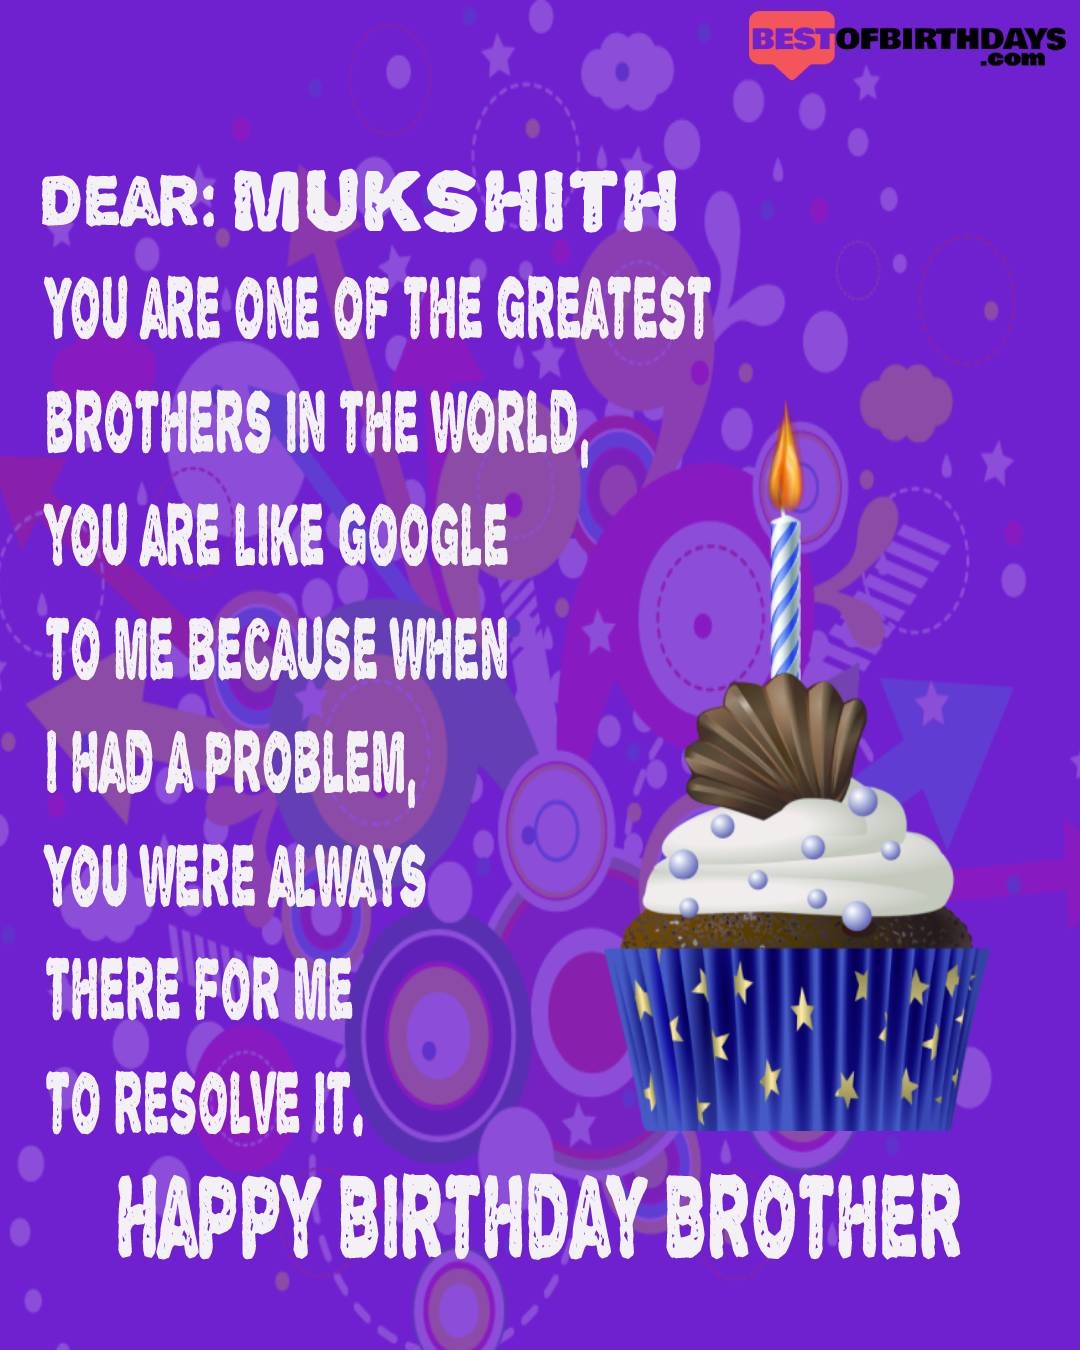 Happy birthday mukshith bhai brother bro